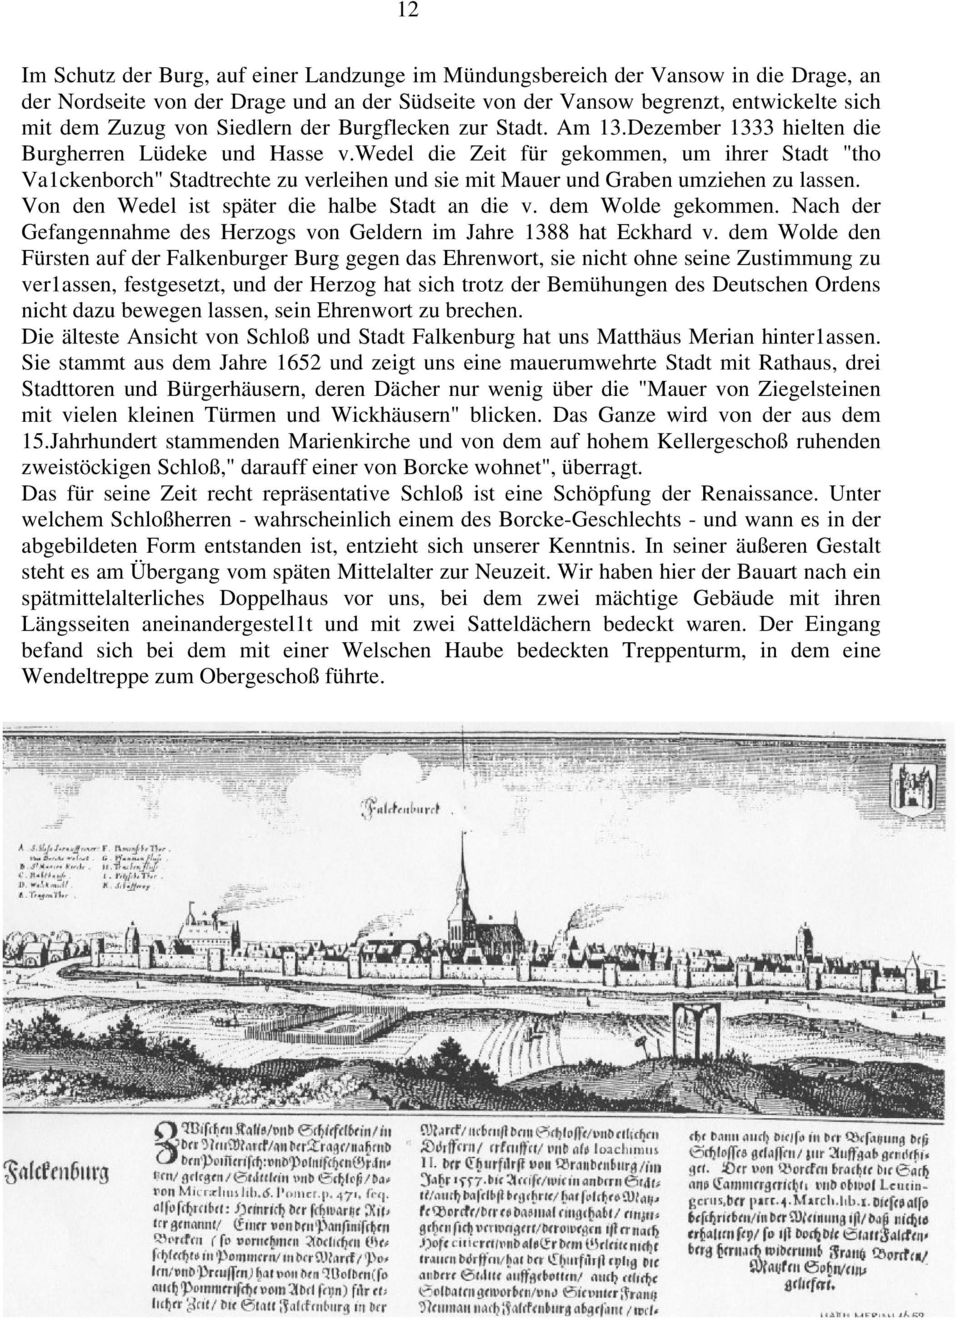 wedel die Zeit für gekommen, um ihrer Stadt "tho Va1ckenborch" Stadtrechte zu verleihen und sie mit Mauer und Graben umziehen zu lassen. Von den Wedel ist später die halbe Stadt an die v.